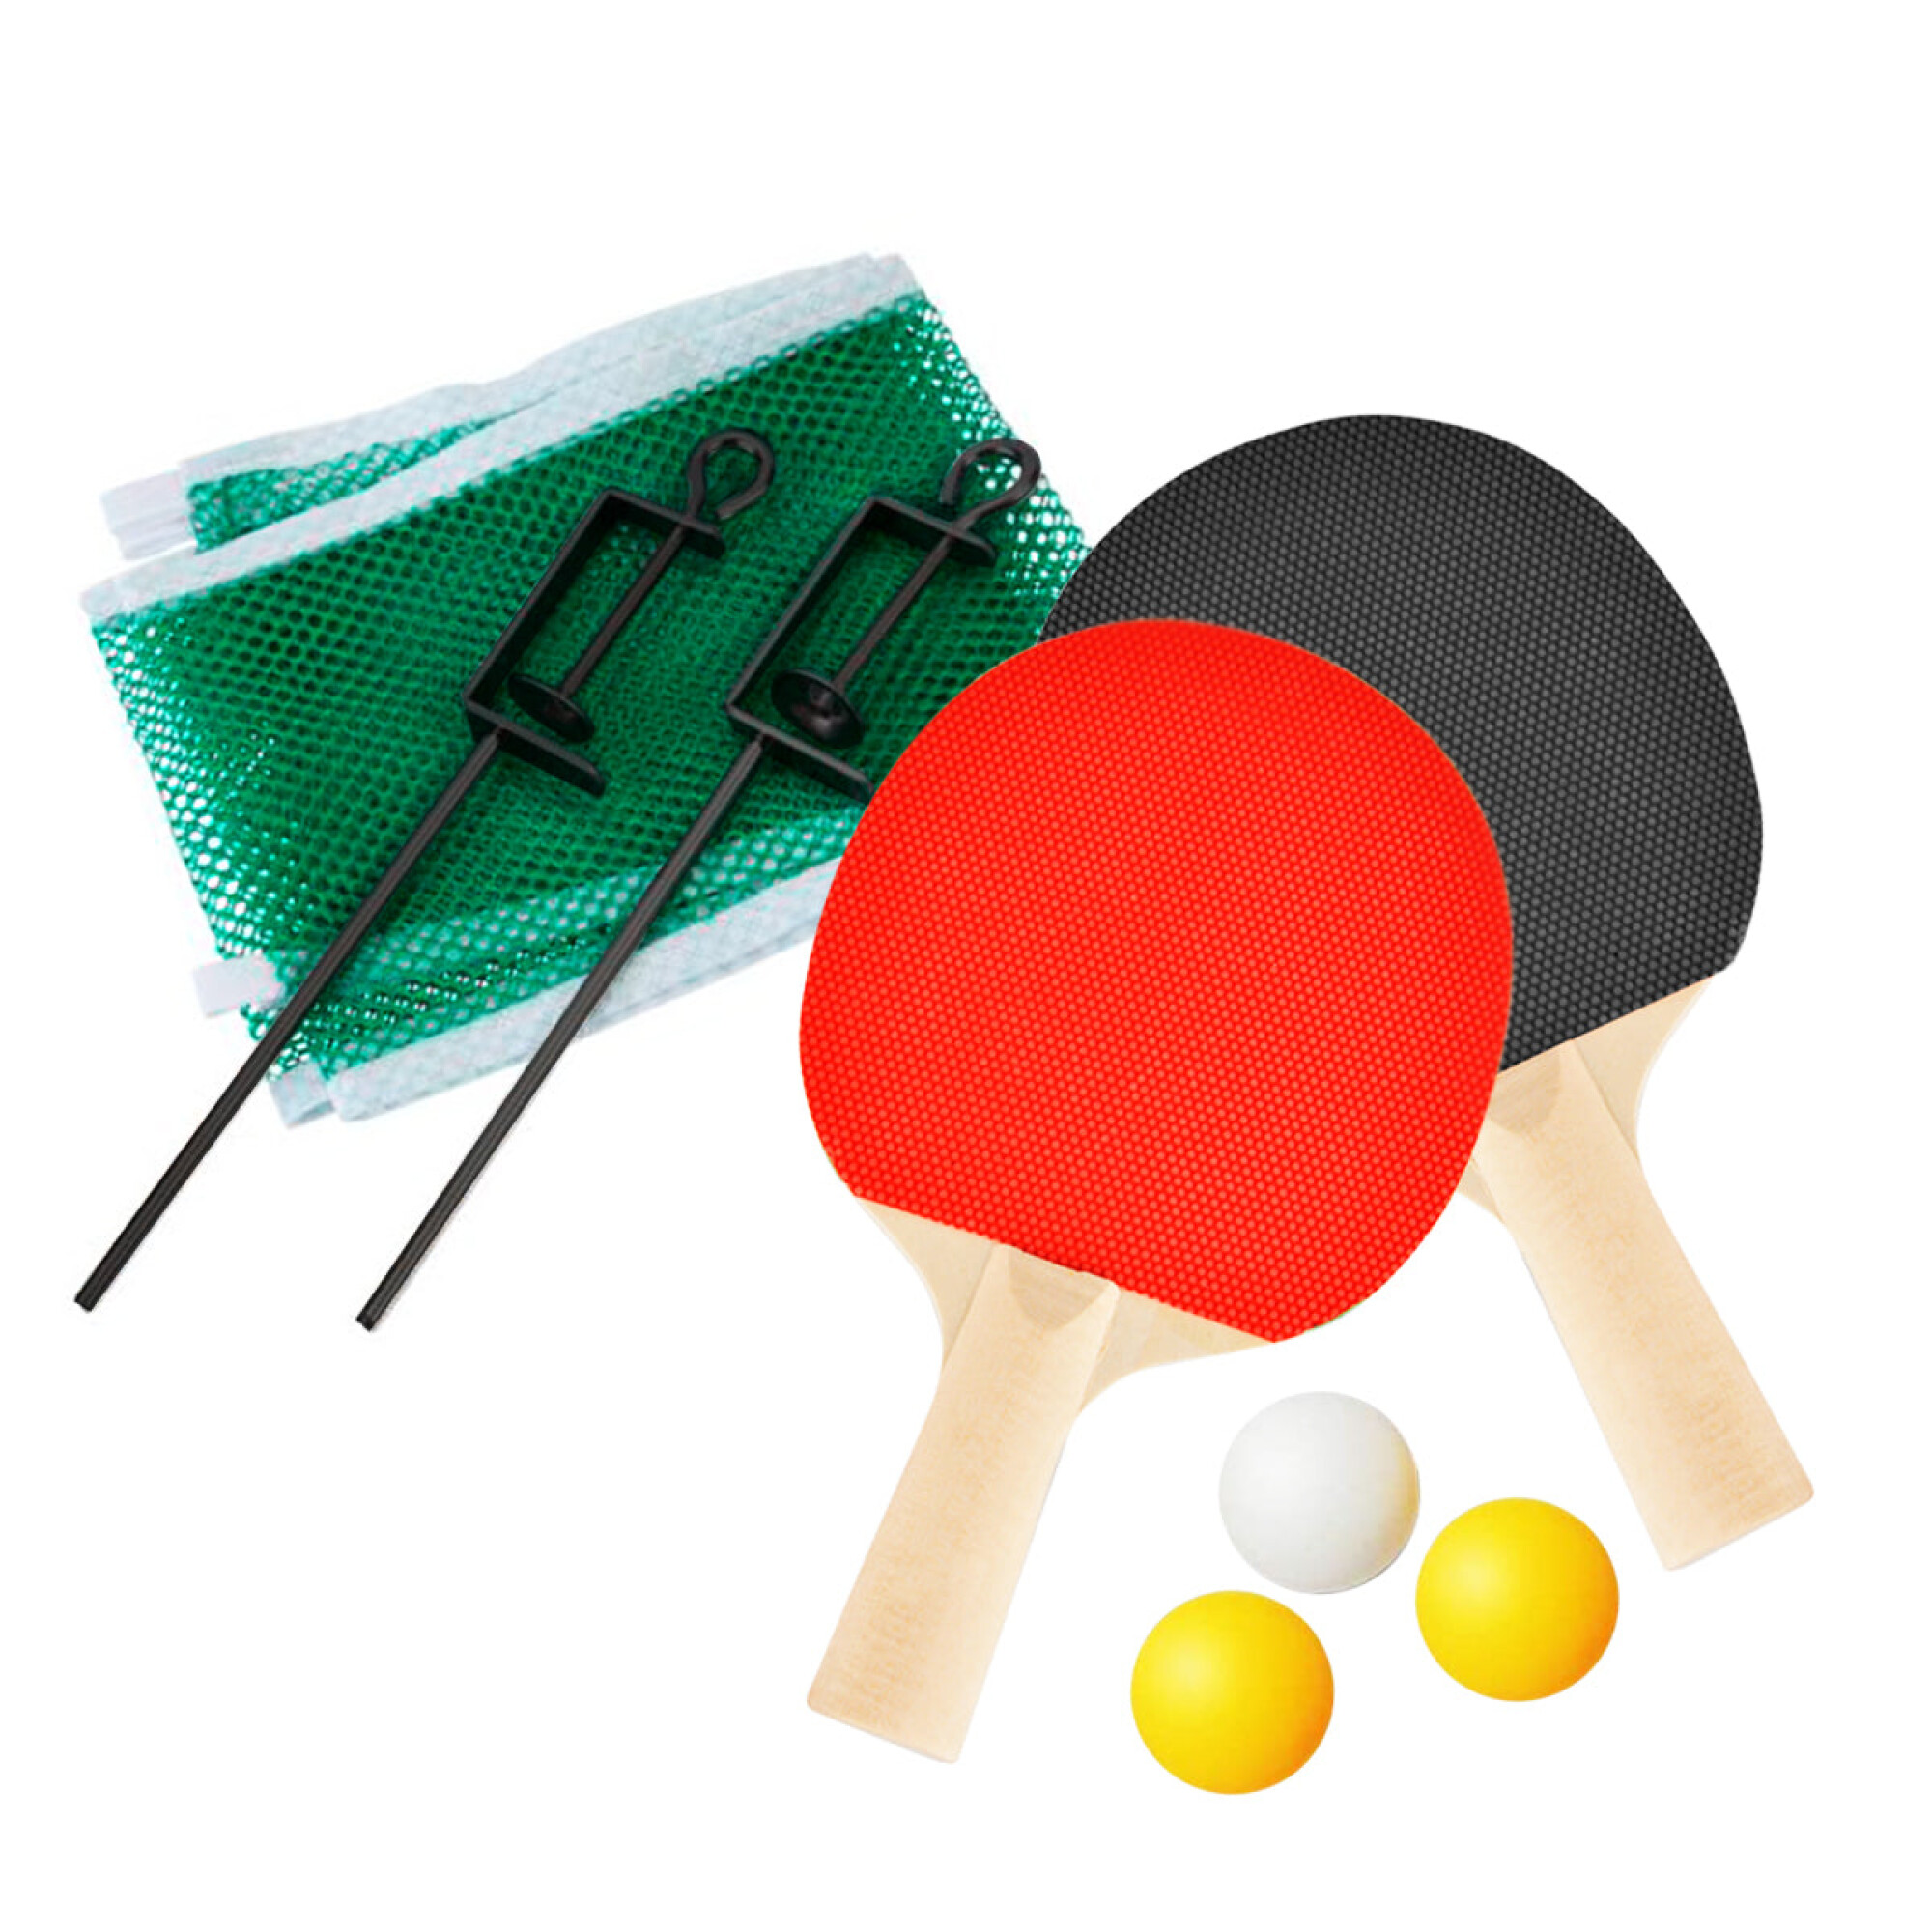 Mesa de ping pong 13 mm con patas + red, paletas y pelotas